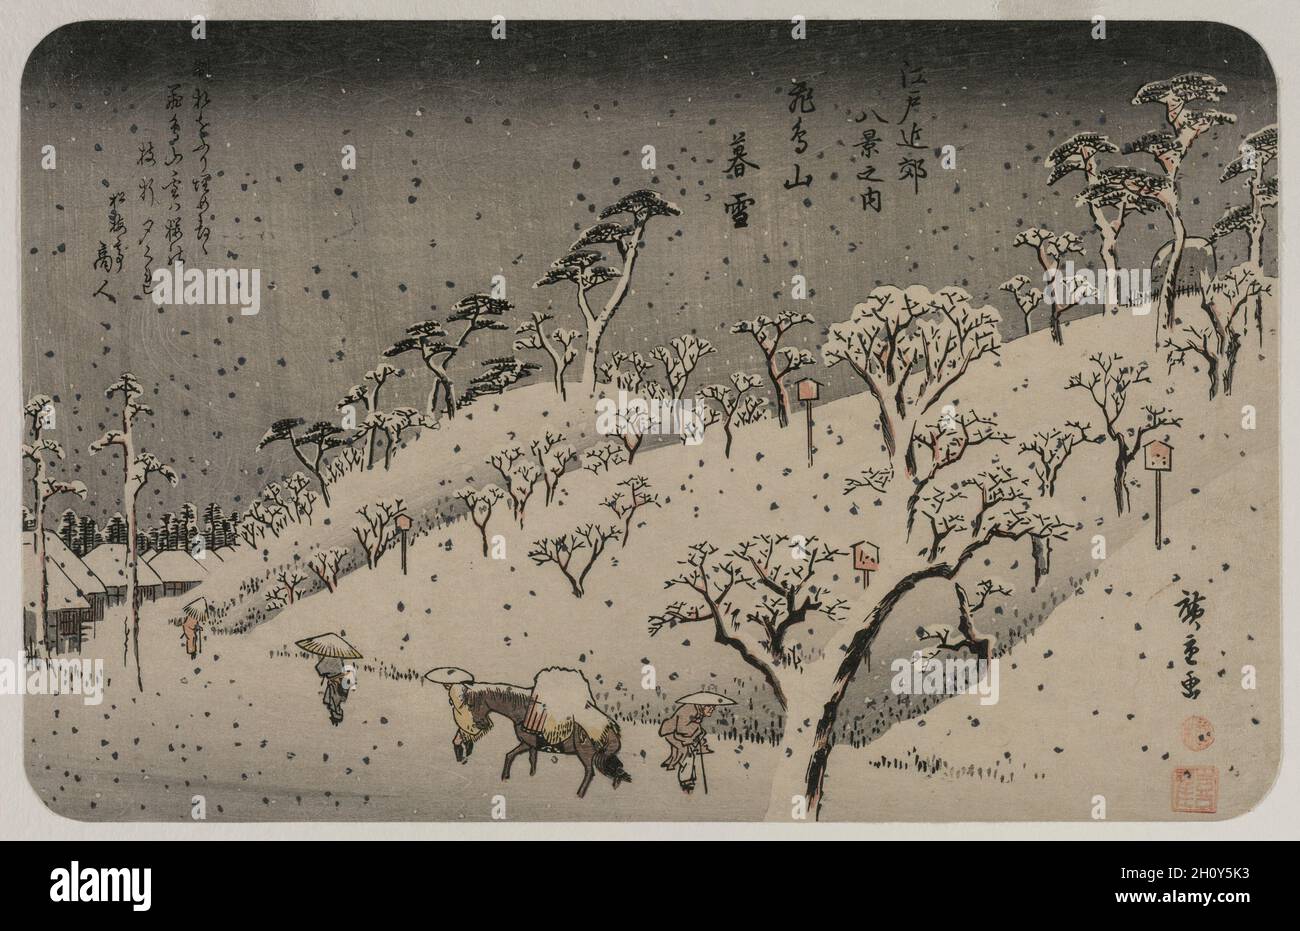 Abendschnee auf dem Asuka-Hügel, aus der Serie Eight Views of the Environs of Edo, c. 1837-38. Utagawa Hiroshige (Japanisch, 1797-1858). Farbholzschnitt; Blatt: 22 x 34.4 cm (8 11/16 x 13 9/16 Zoll). Diese Druckserie wurde erstmals privat für die Taihaid produziert? Gedichtclub unter der Leitung eines „wilden“ oder Comic-Poeten (ky?ka) mit dem humorvollen Künstlernamen Taihaid? Donsh? (Oder Nomimasu), was übersetzt heißt „Halle des großen Becheres, schlucken Sie einen Liter (oder trinken Sie)“. Der erste Druck hatte drei Gedichte von Mitgliedern des Clubs an der Spitze. Dieser Druck, der später als Teil einer öffentlichen Reihe der Serie veröffentlicht wurde, hat nur eine Stockfoto